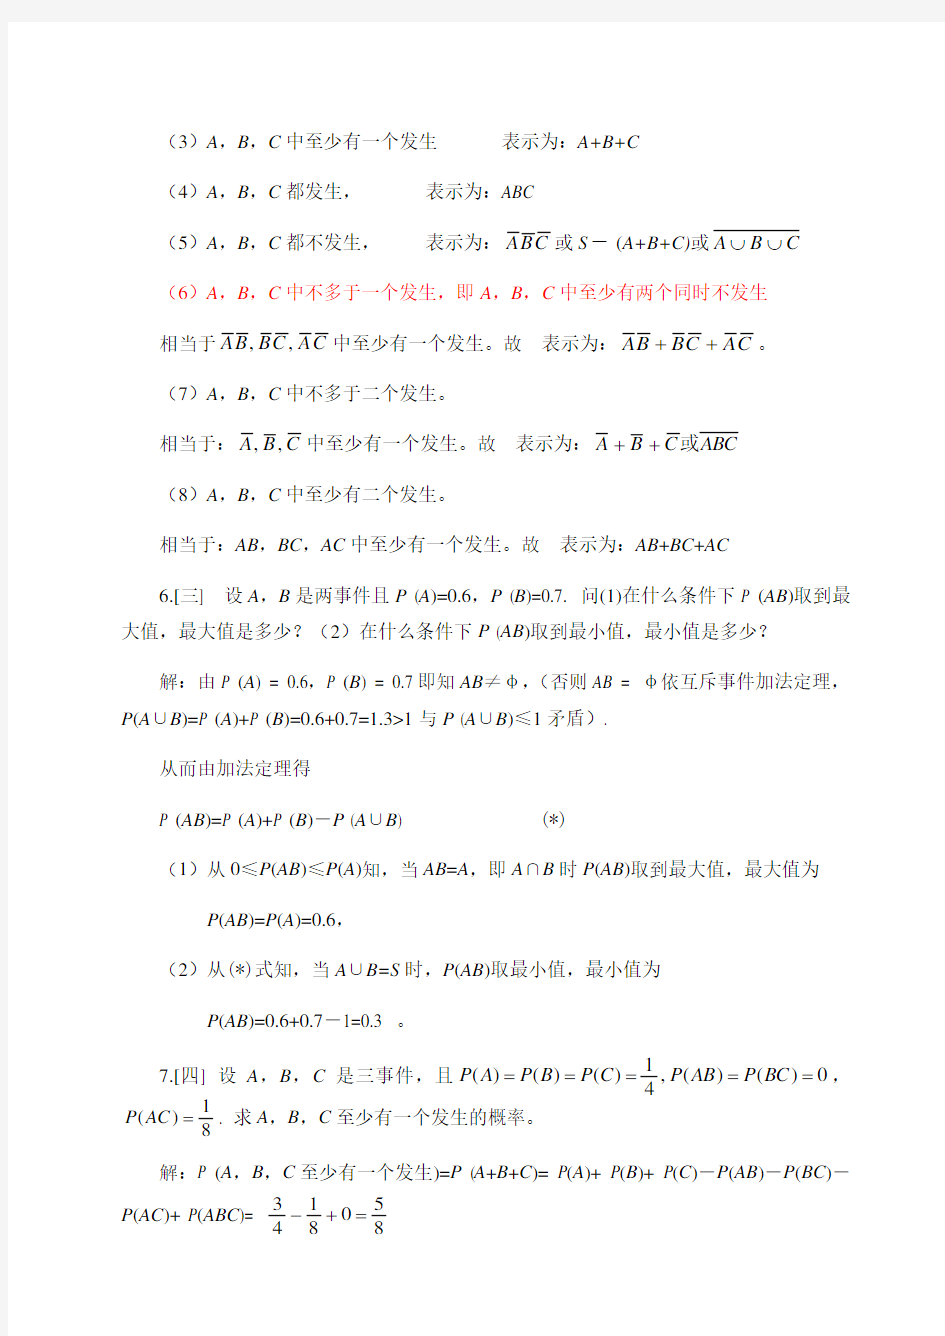 概率论与数理统计第四版-课后习题答案_盛骤__浙江大学